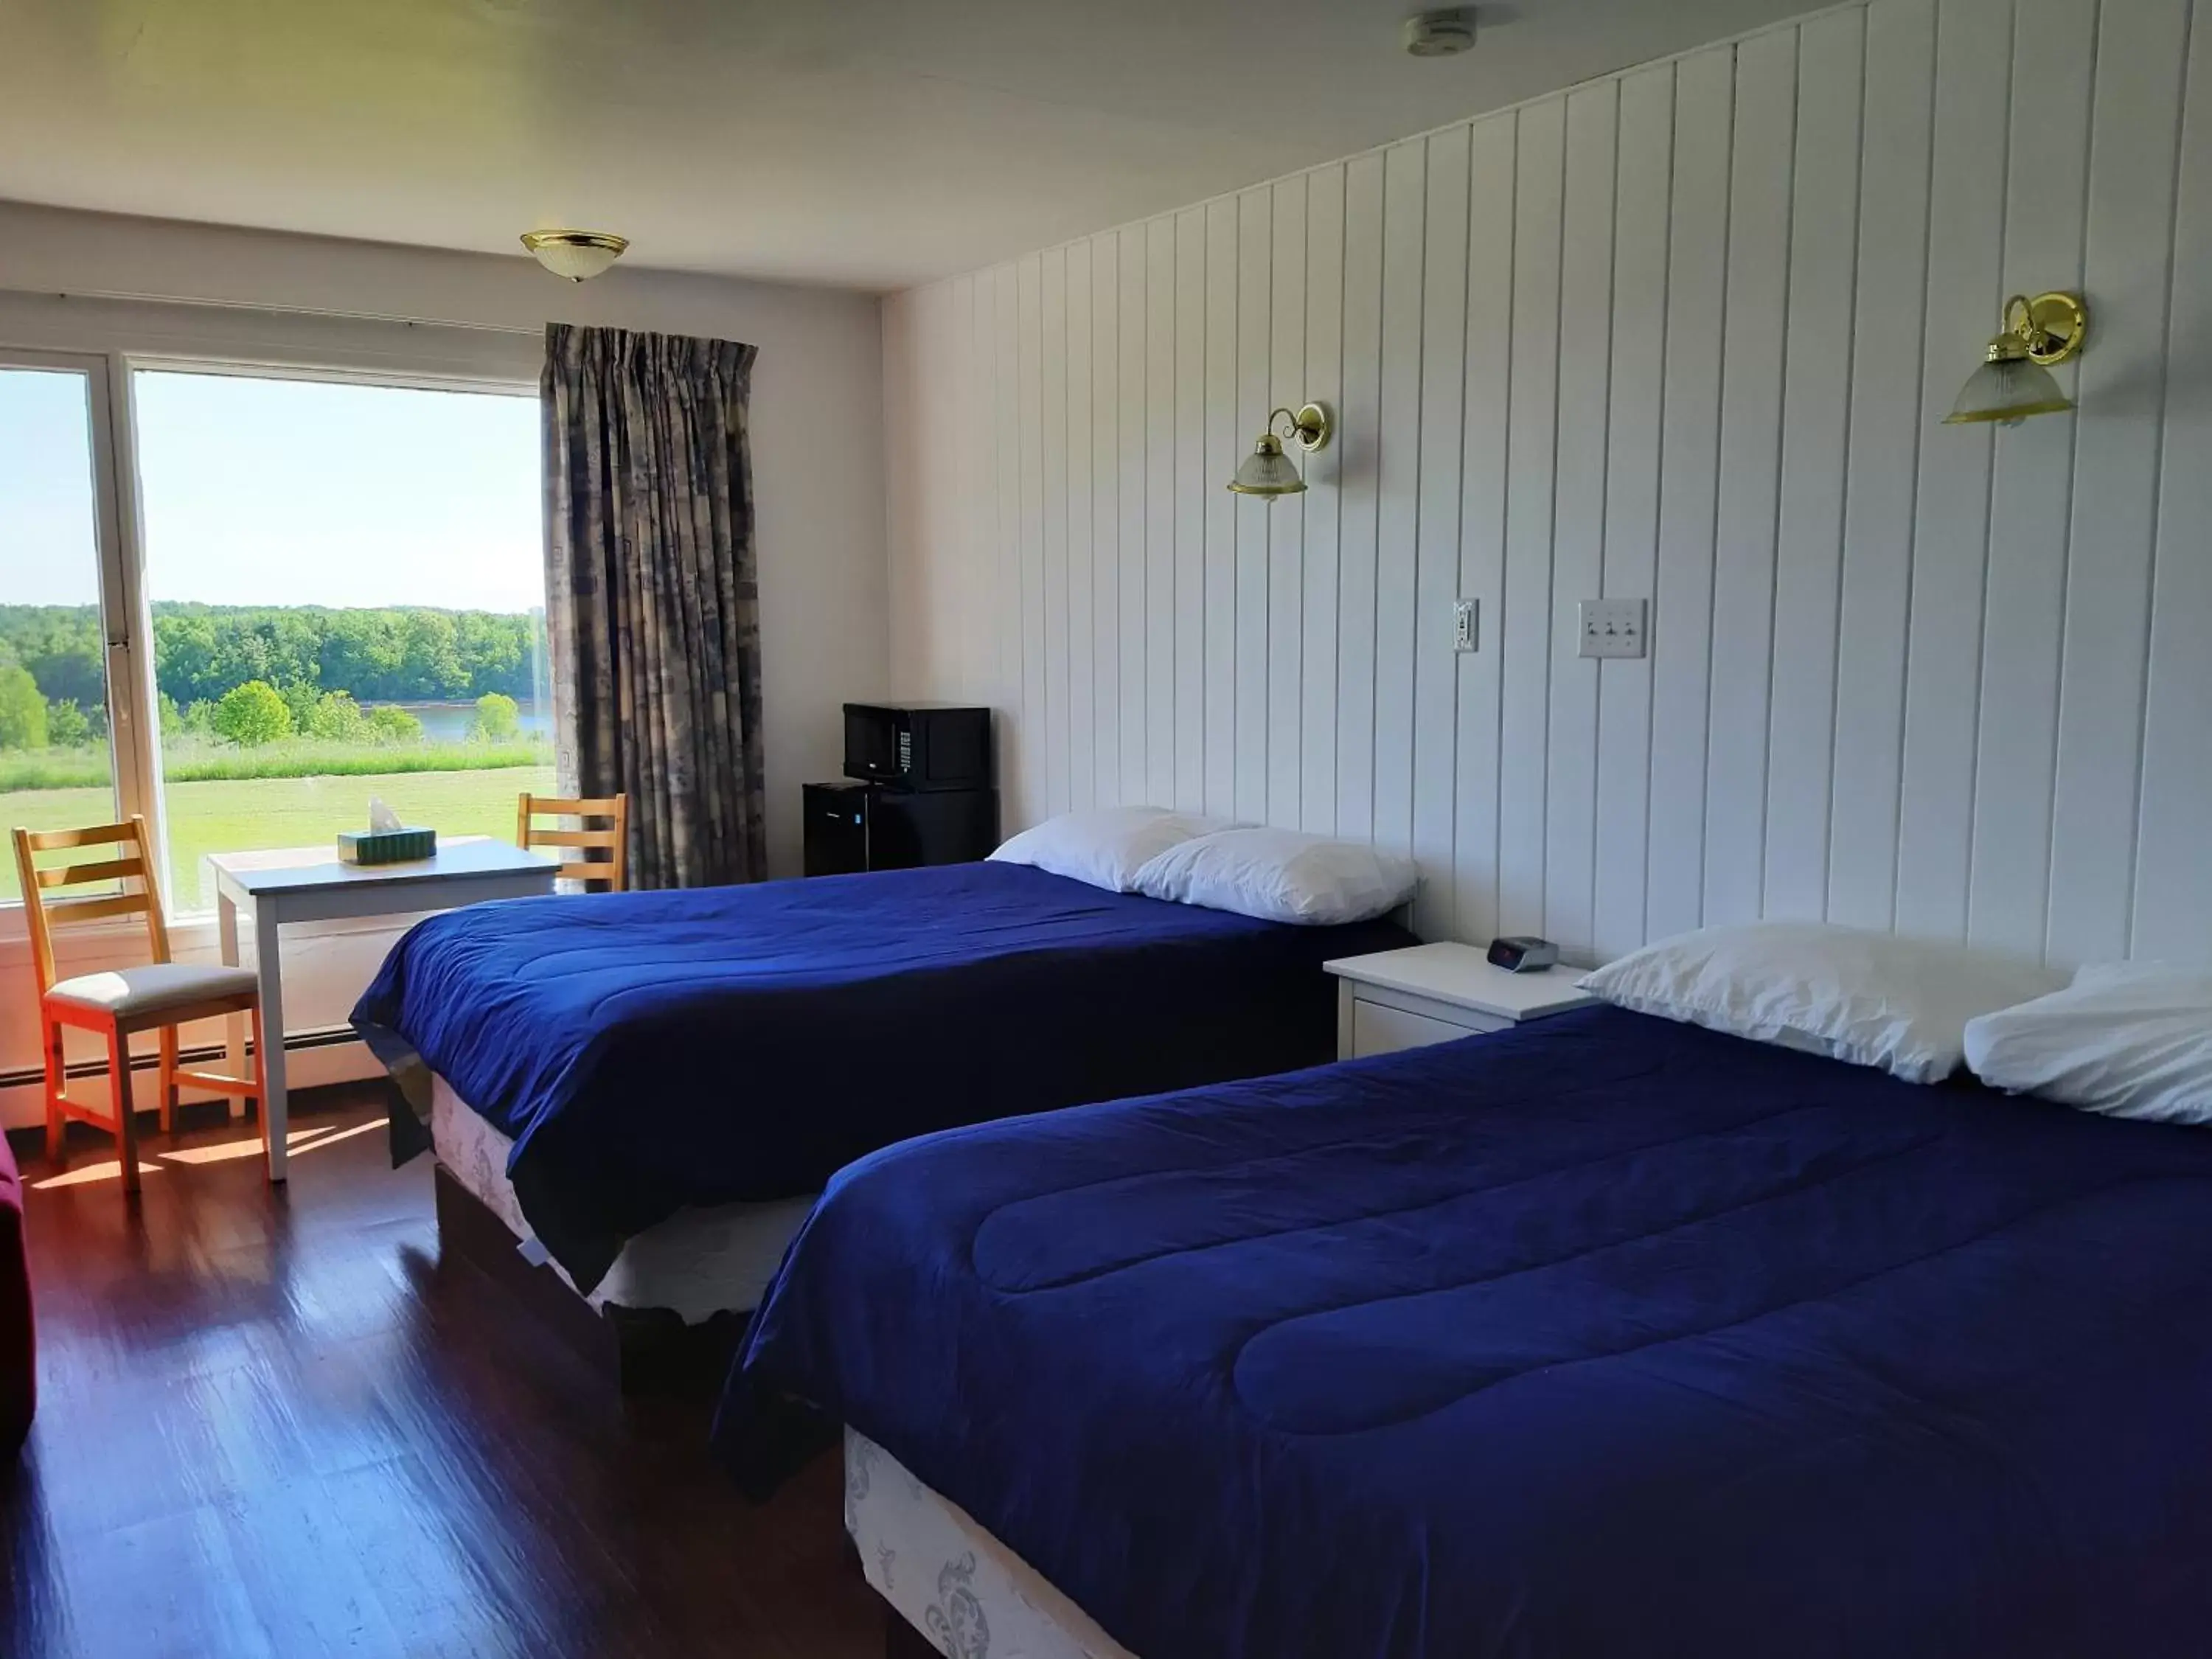 Bedroom, Bed in Balmoral Motel